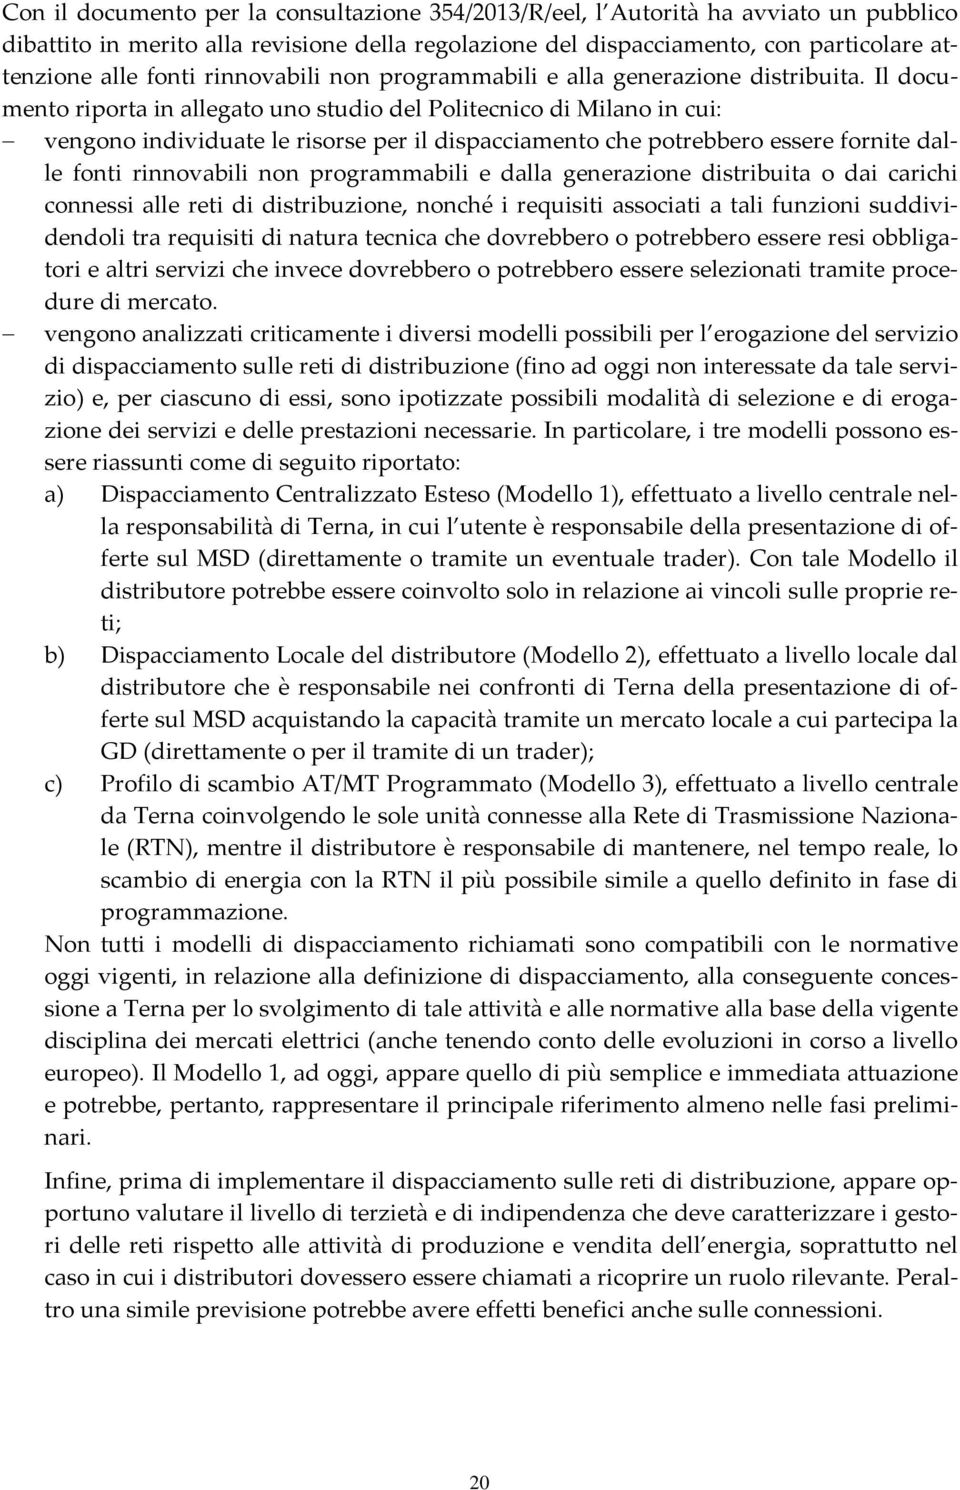 Il documento riporta in allegato uno studio del Politecnico di Milano in cui: vengono individuate le risorse per il dispacciamento che potrebbero essere fornite dalle fonti rinnovabili non